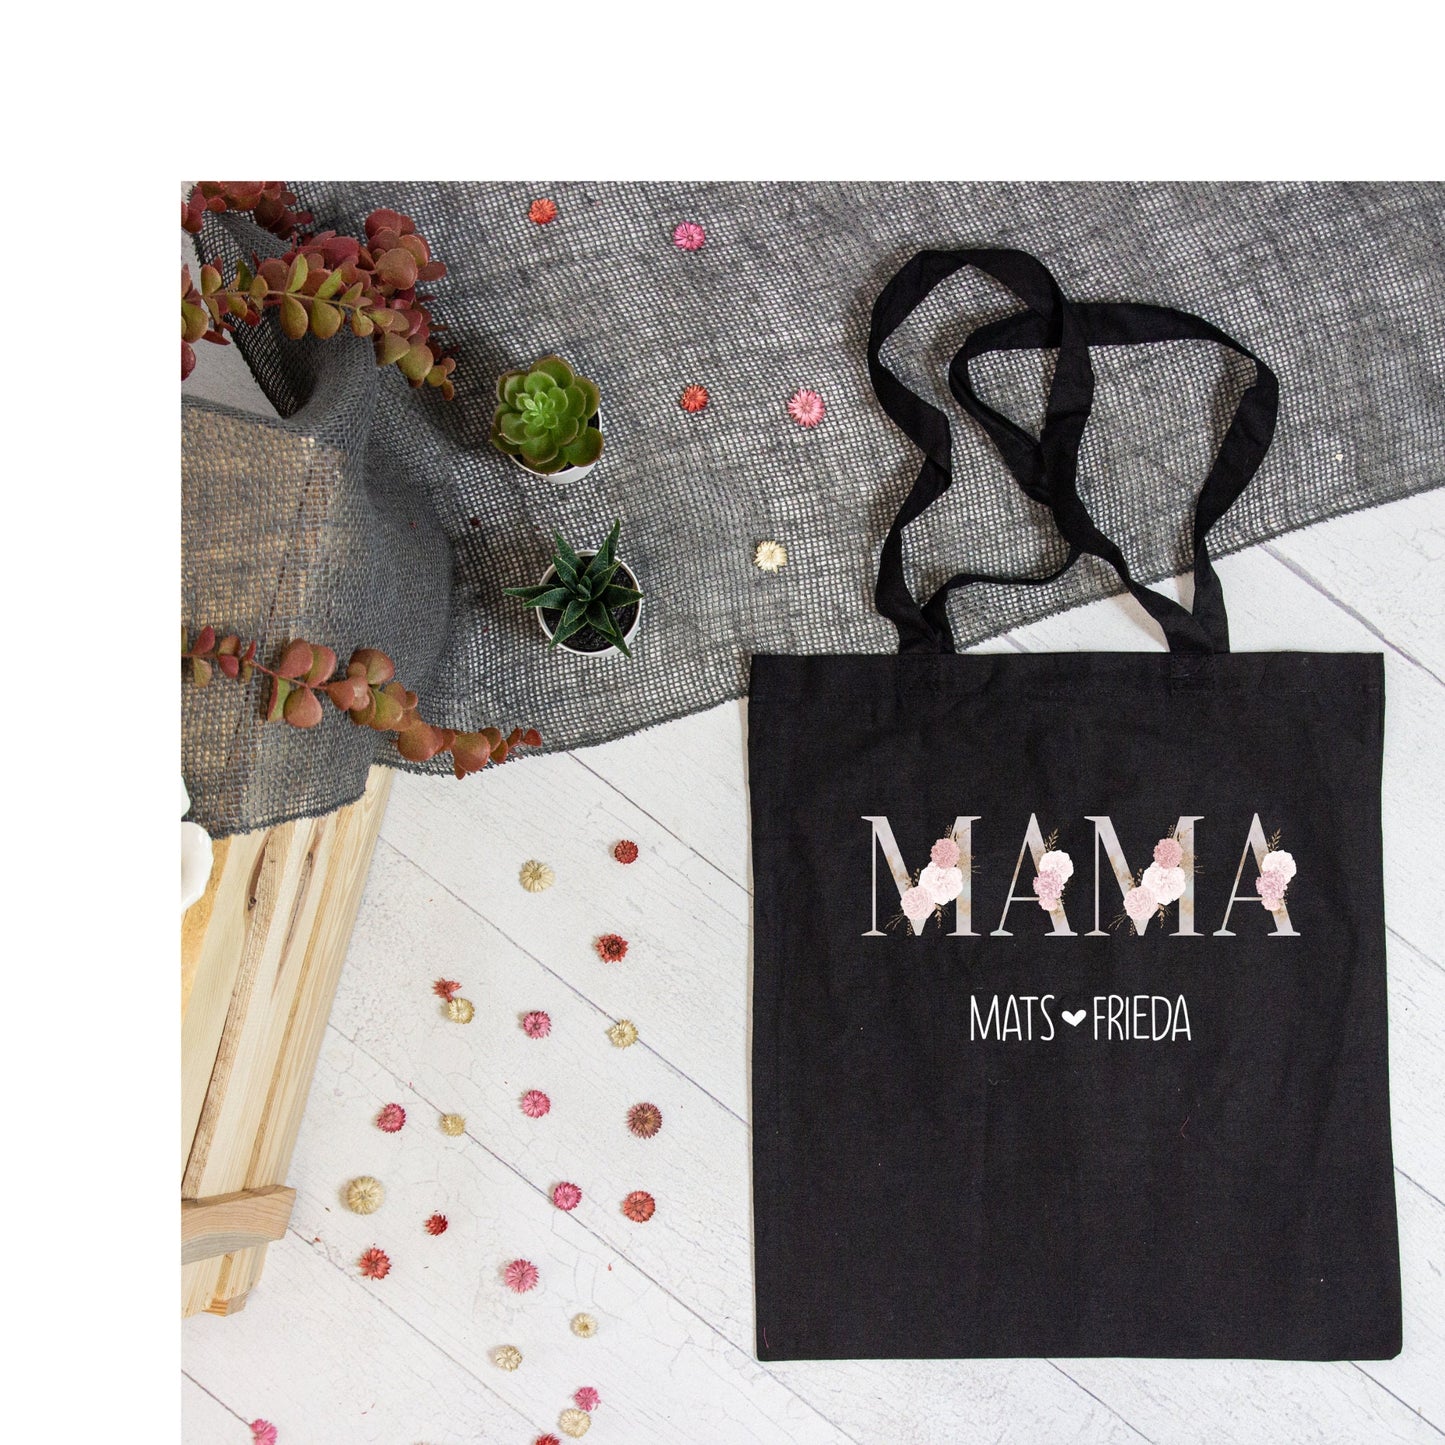 Stofftasche Baumwollbeutel MAMA - mit Namen der Kinder personalisiert - verschiedene Farben - tolles Geschenk zu Muttertag